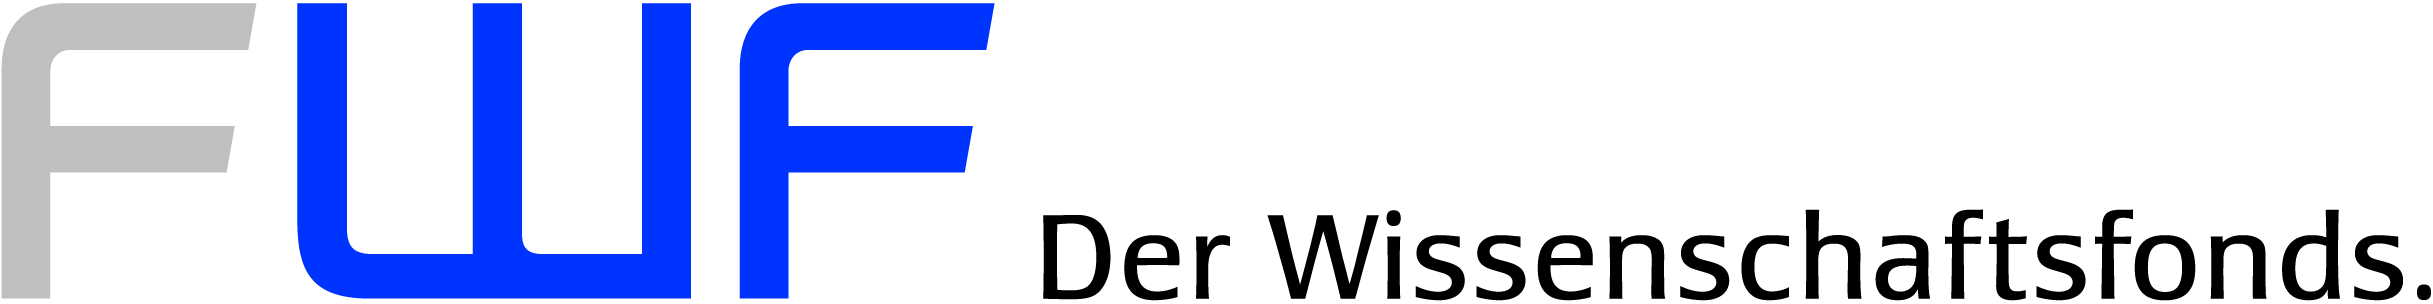 Austria_fwf-logo